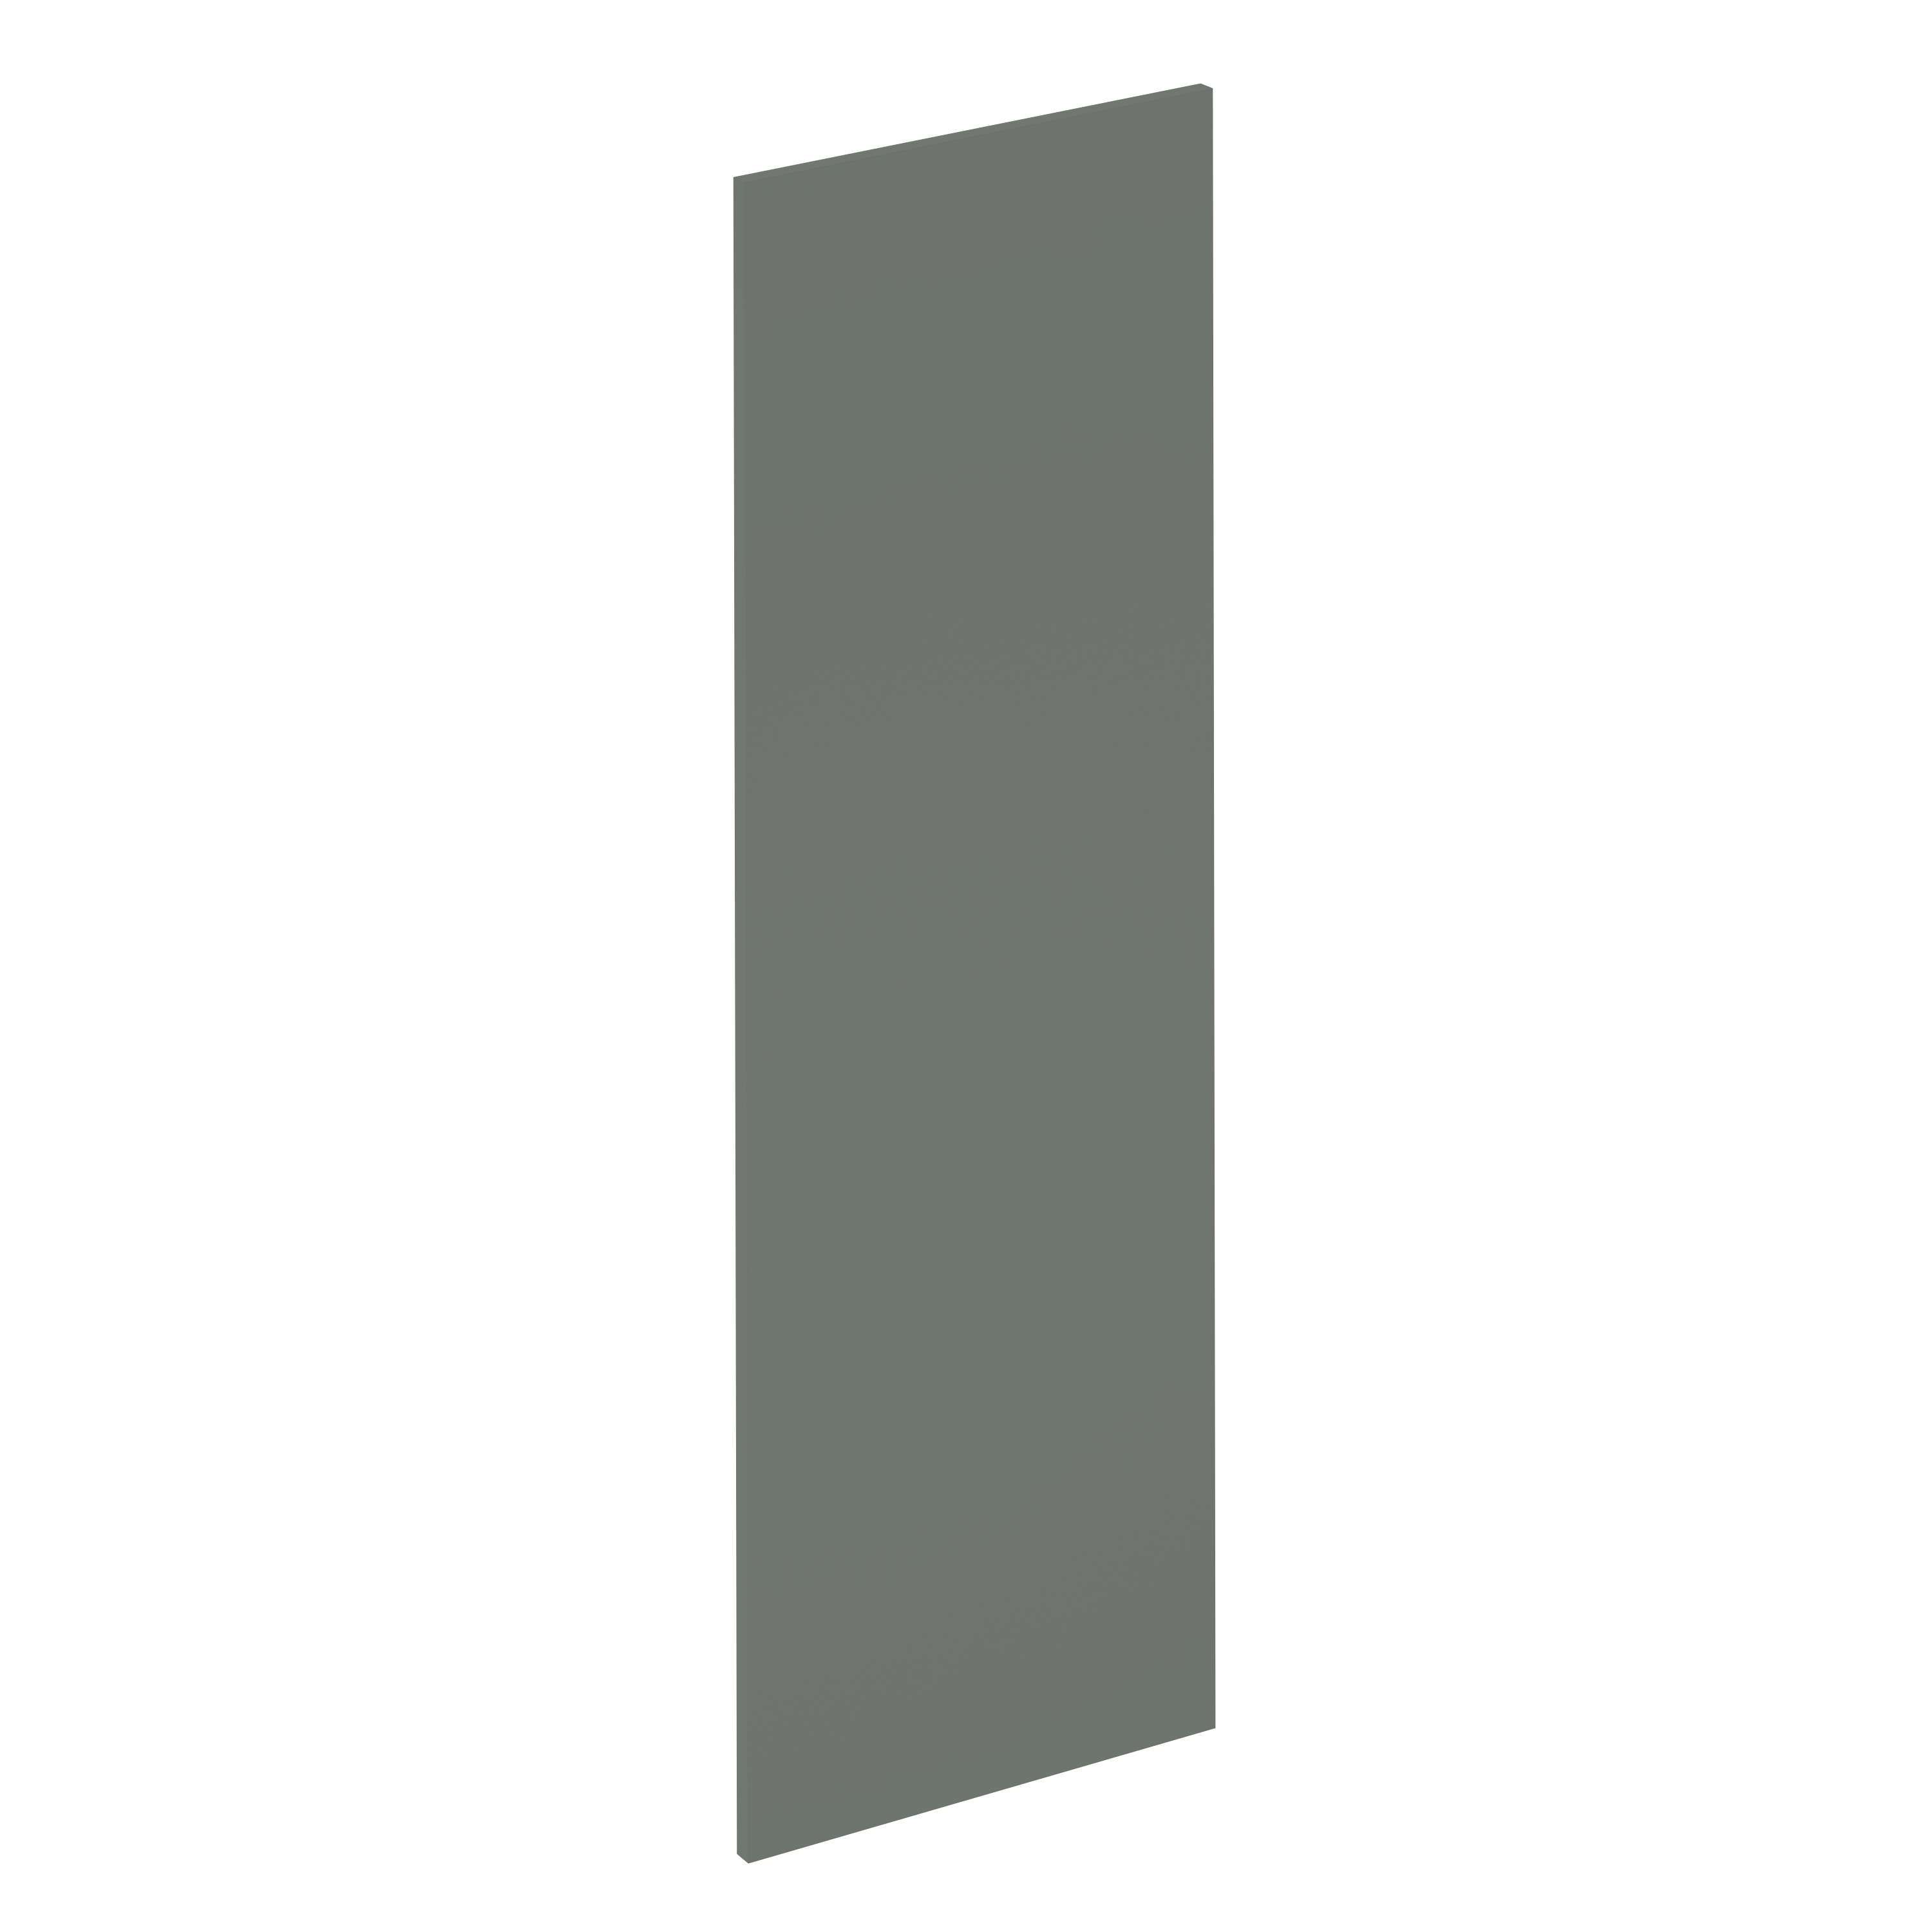 Puerta para mueble de cocina vienne verde mate h 137.6 x l 45 cm